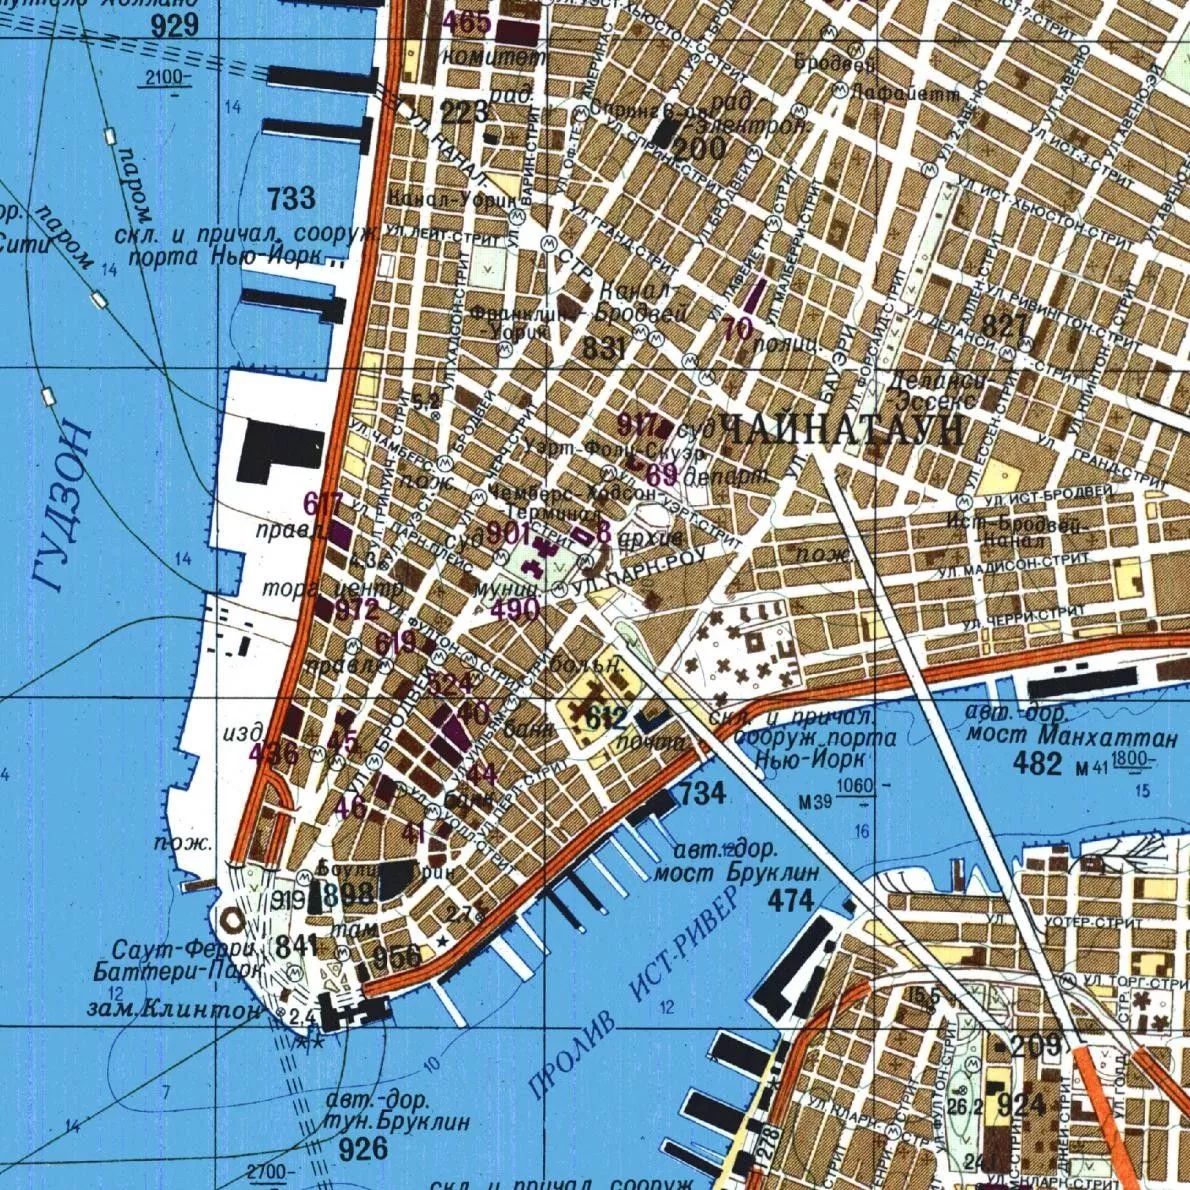 苏联1982年印制的曼哈顿下城地图详尽记载了该地区有关轮渡航线,地铁